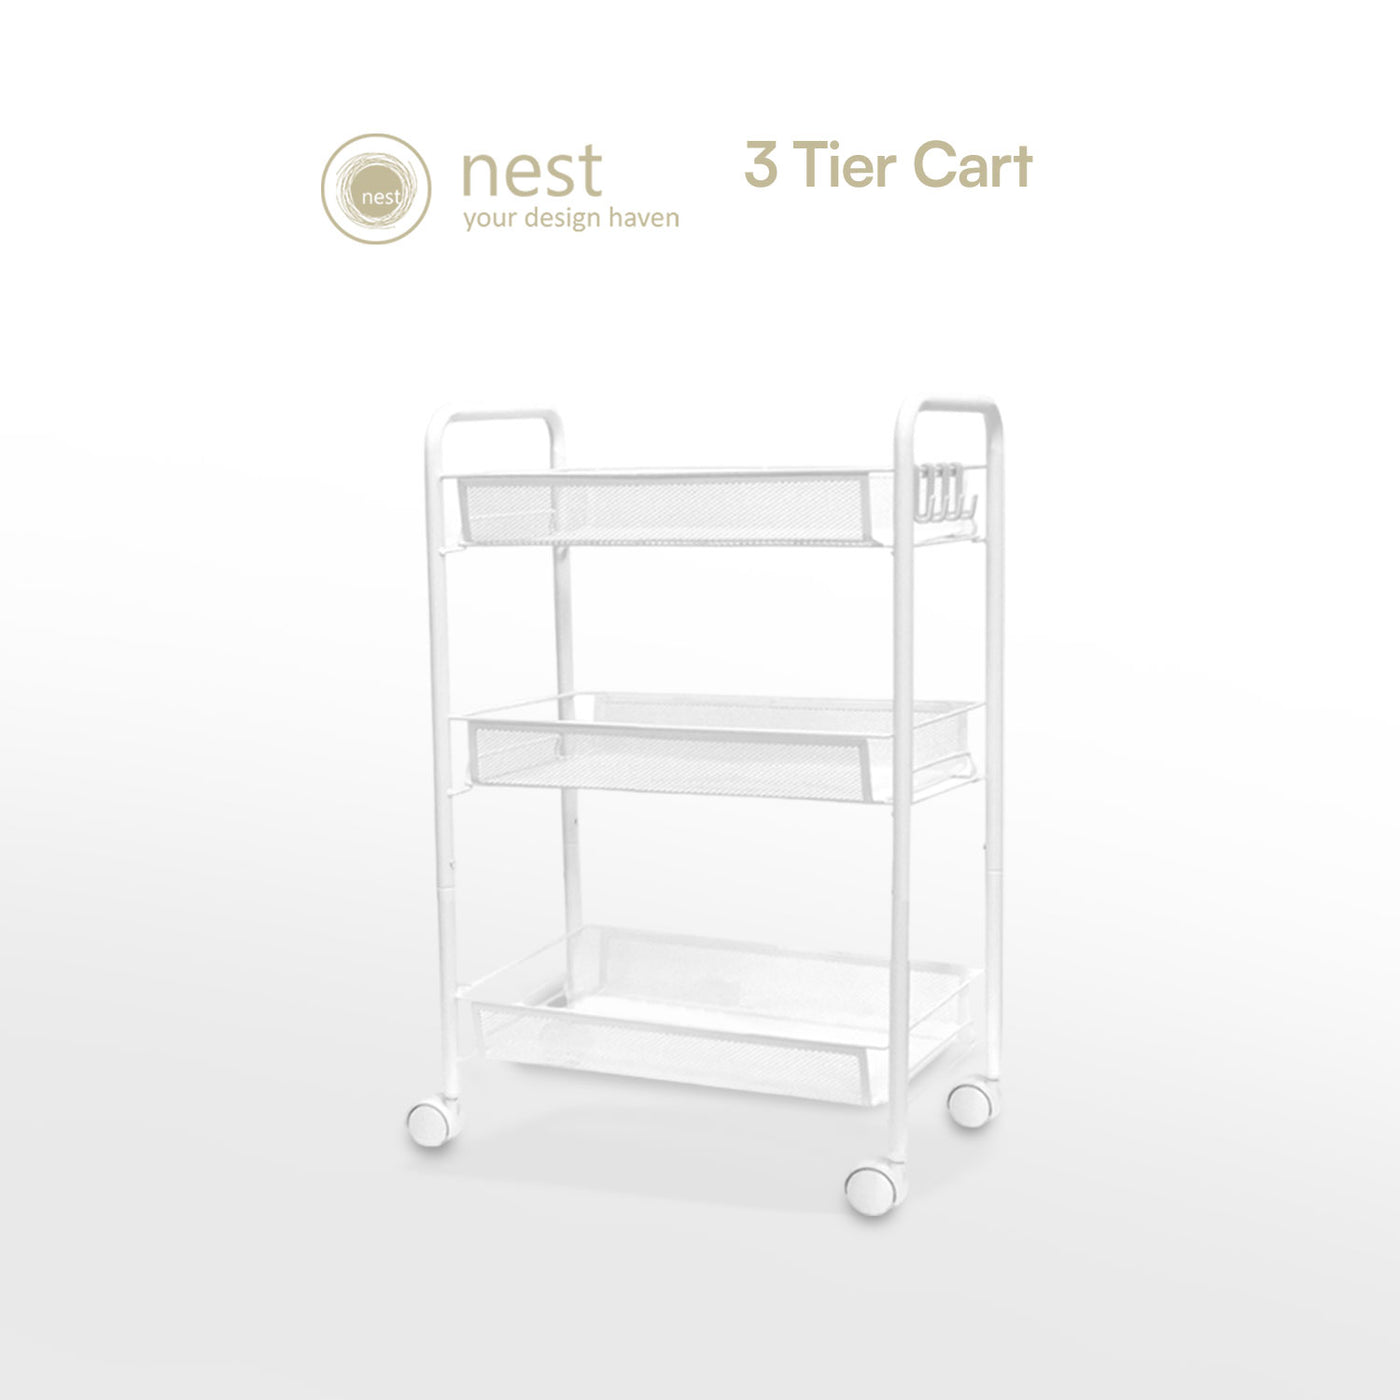 NEST DESIGN LAB 3 Multi-Tier Narrow Kitchen Storage Trolley Cart